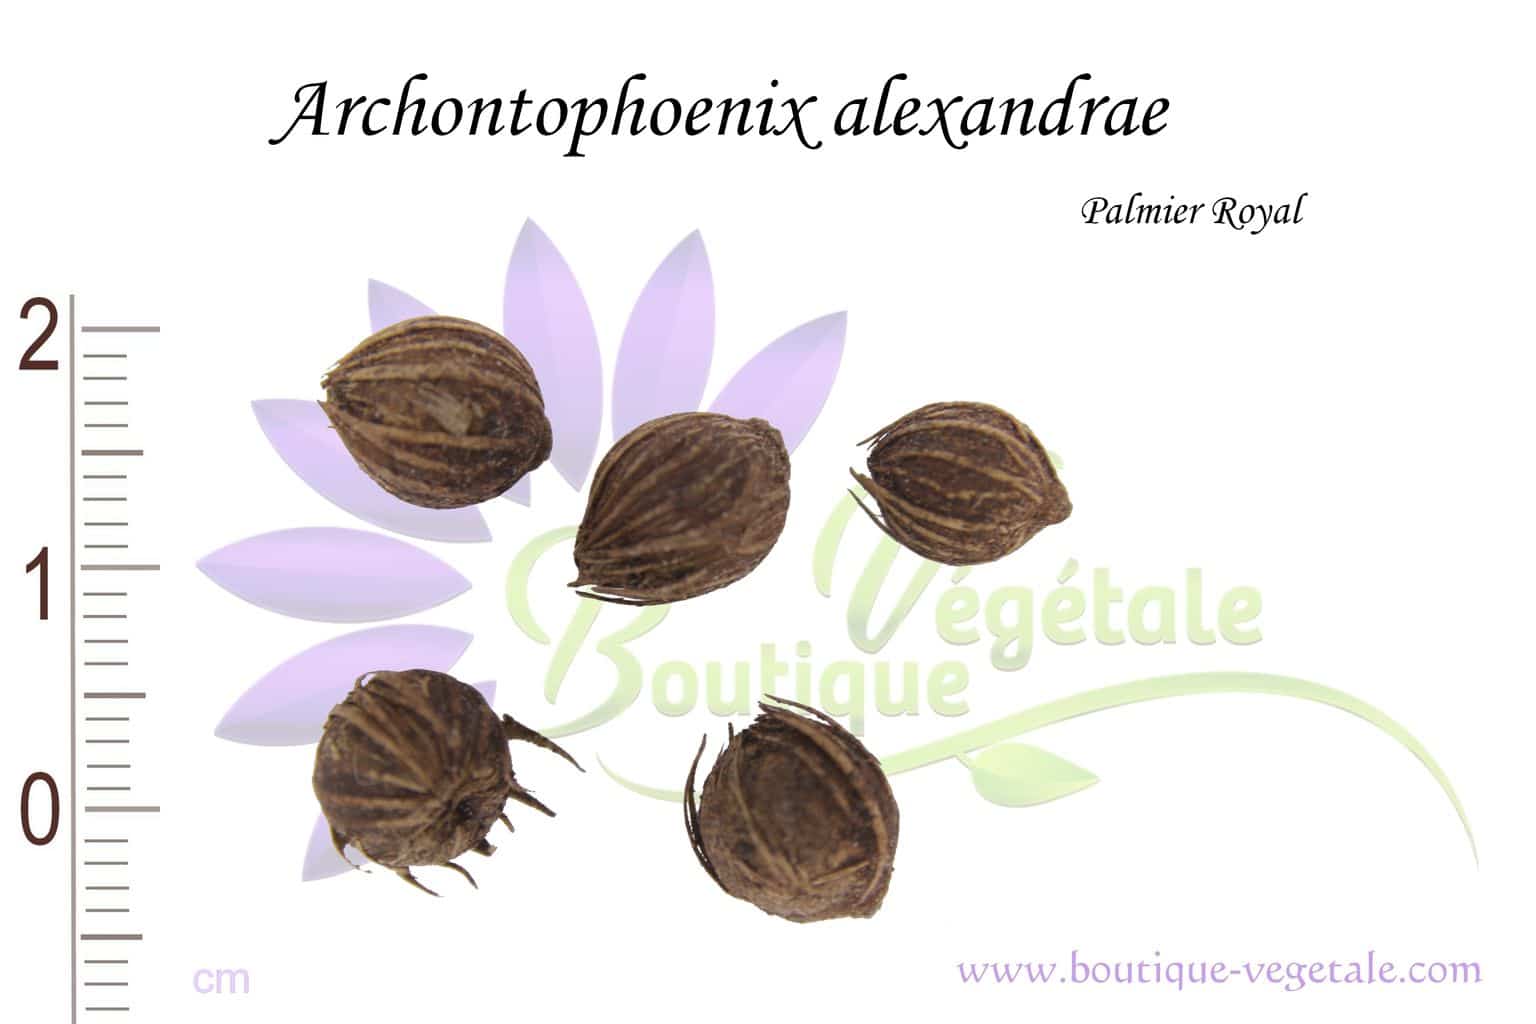 Graines d'Archontophoenix alexandrae, Graines de Palmier royal, Archontophoenix alexandrae seeds